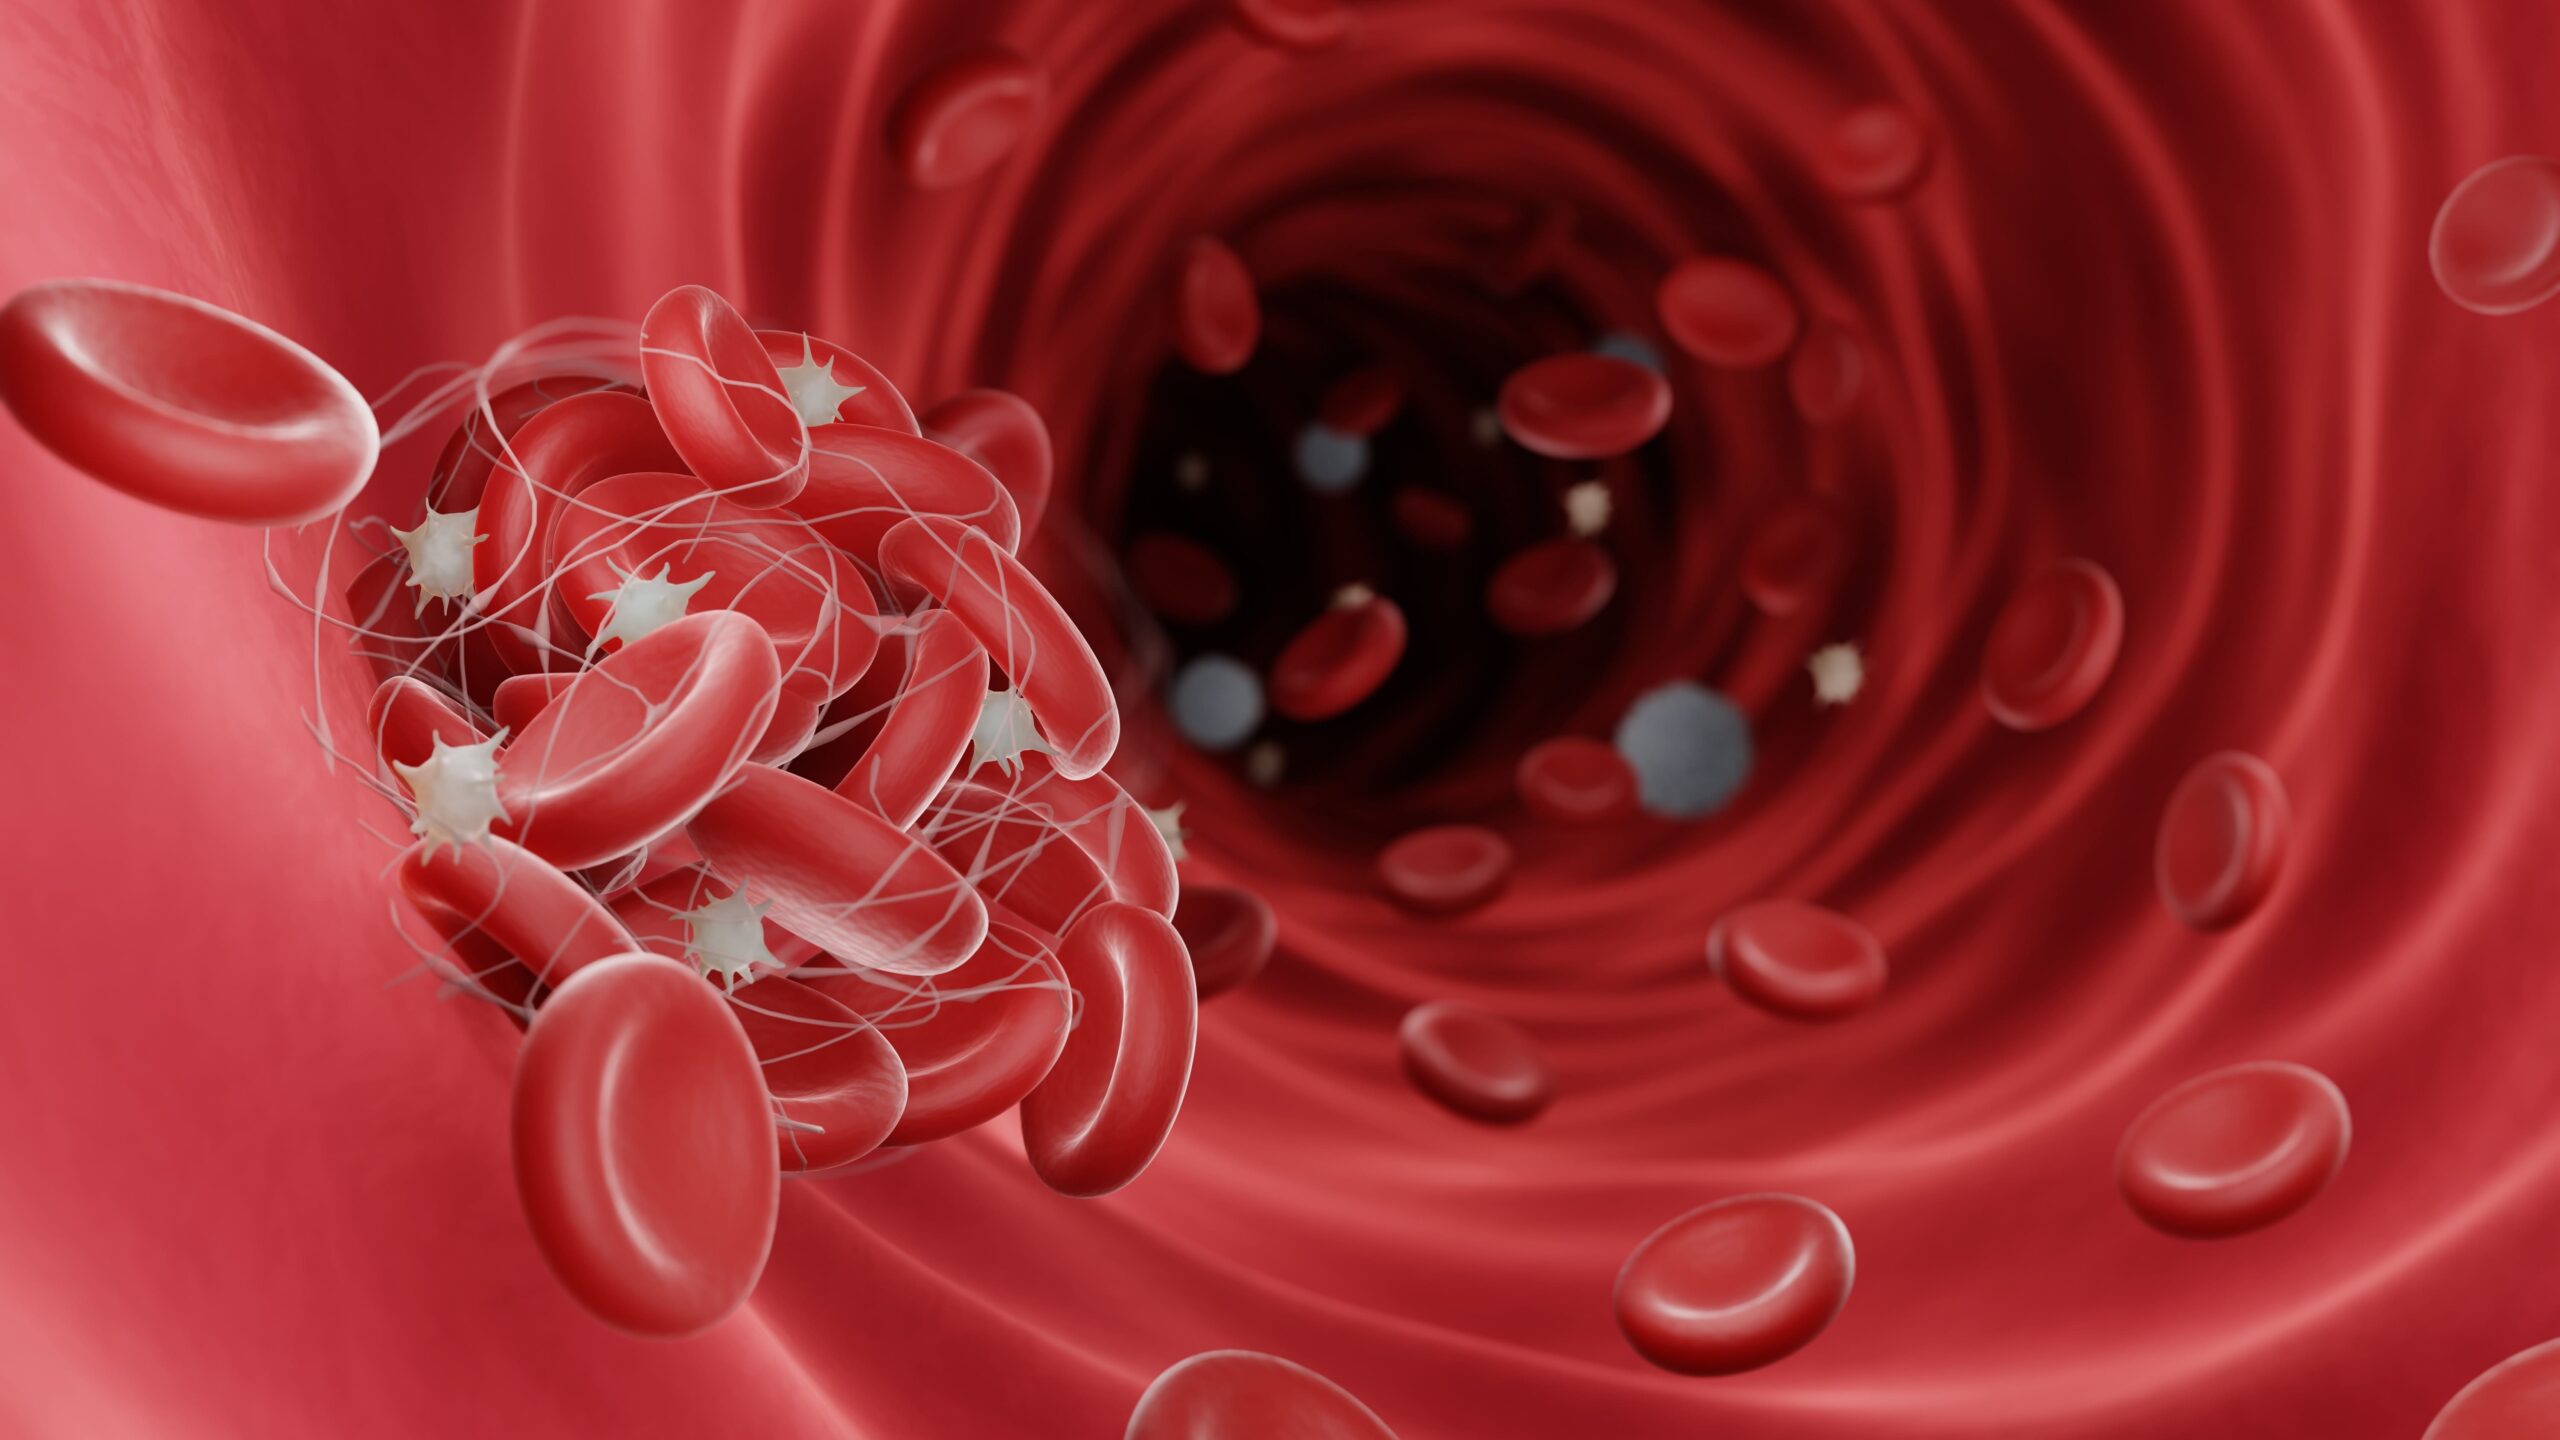 Fidanacogene Elaparvovec-dzkt Approved by FDA for Hemophilia B